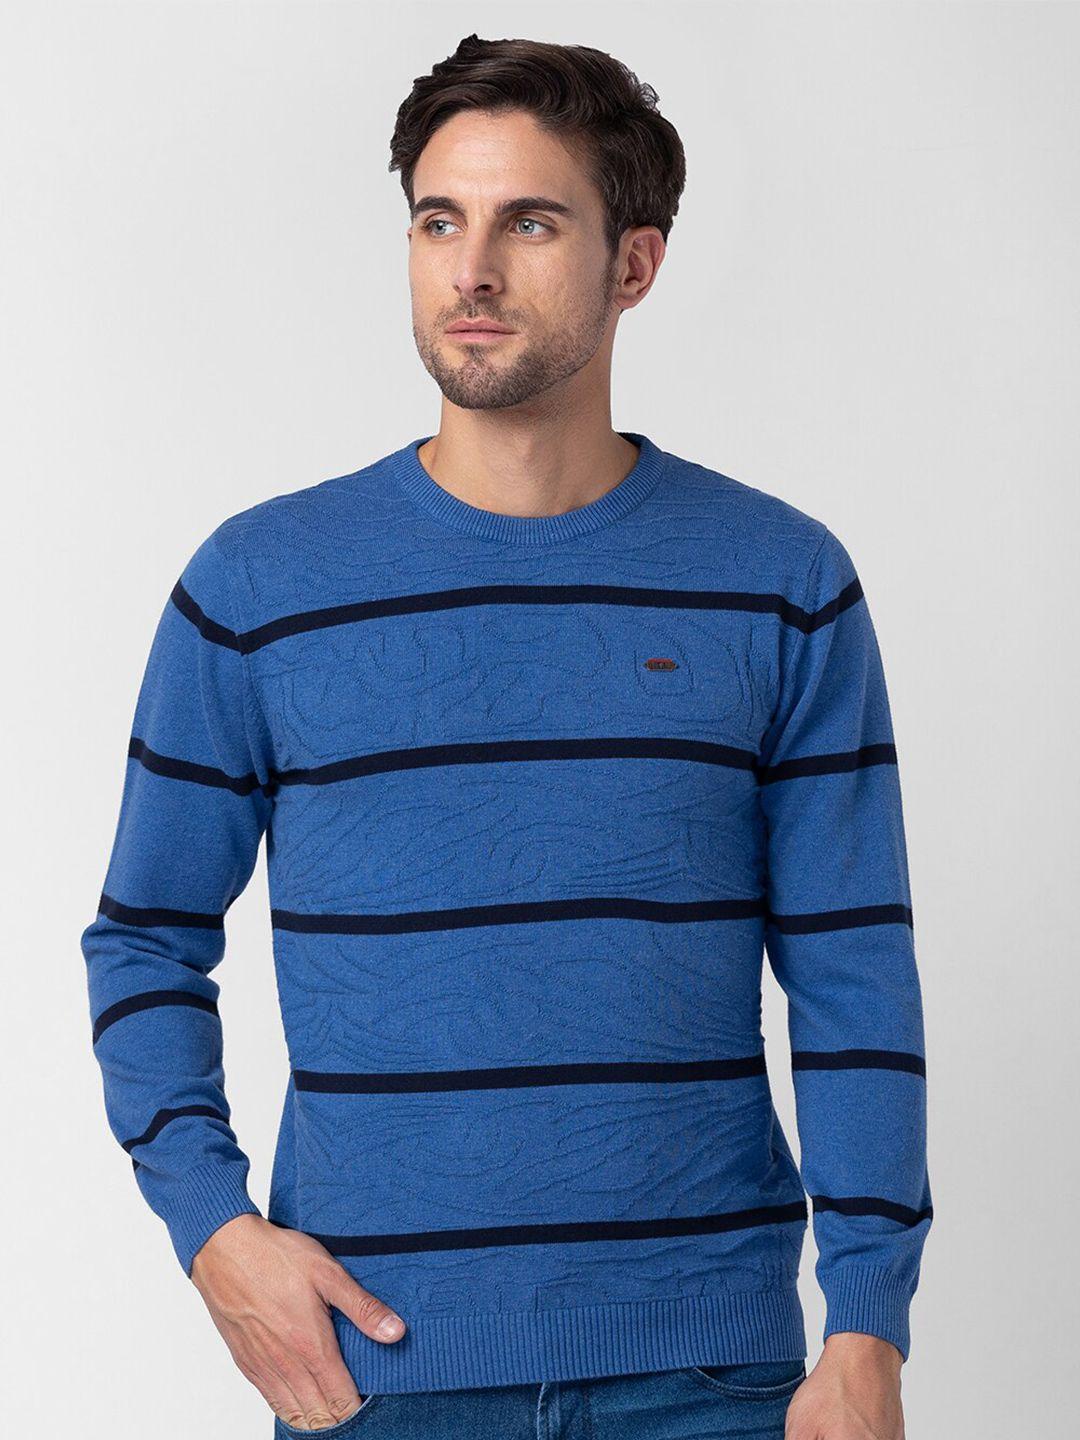 globus-men-striped-cotton-pullover